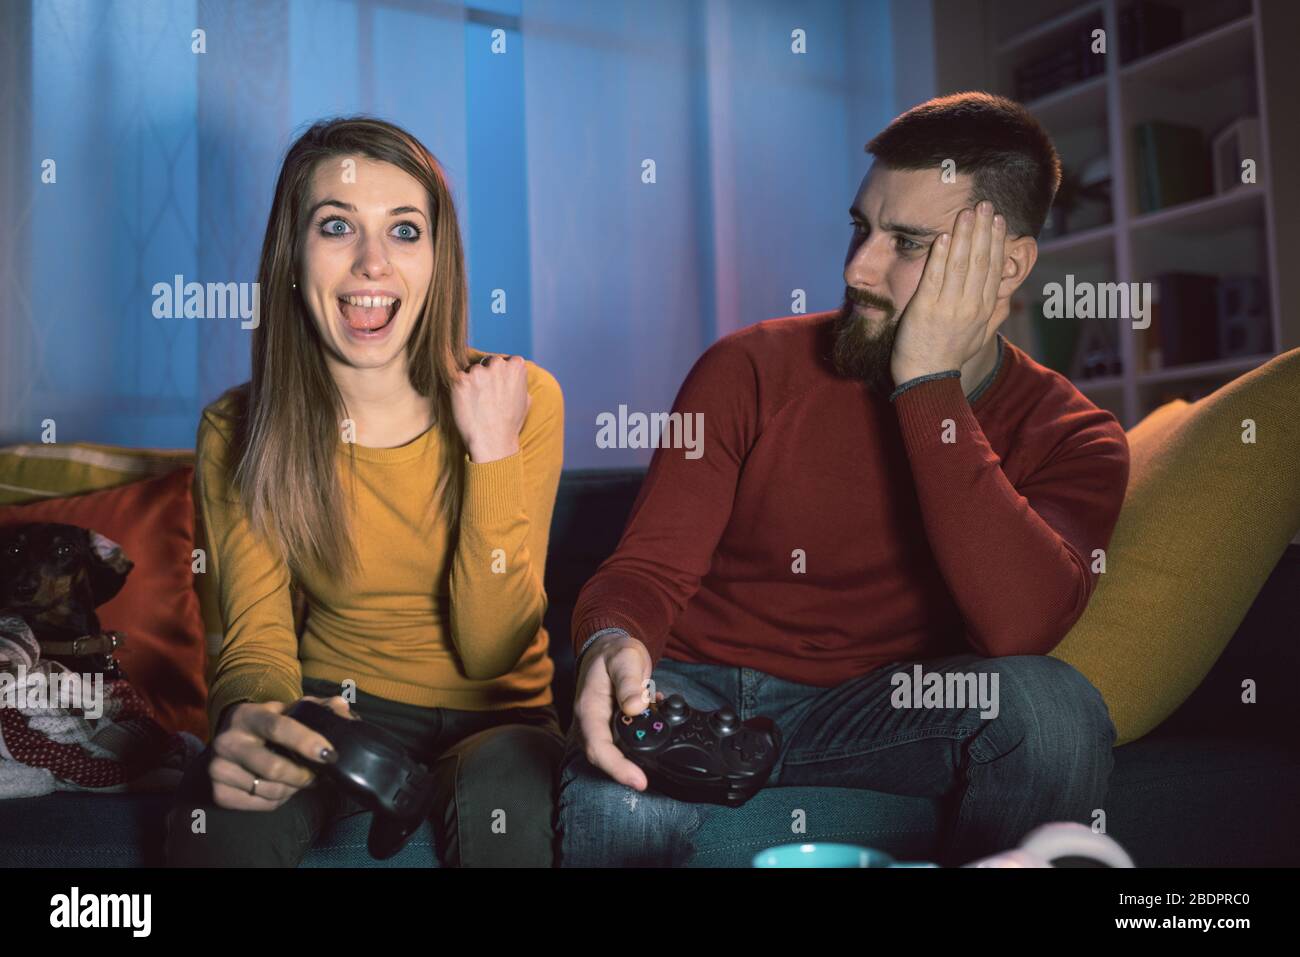 Glückliches Paar, das zu Hause Videospiele spielt, hat gewonnen und feiert mit erhobener Faust Stockfoto